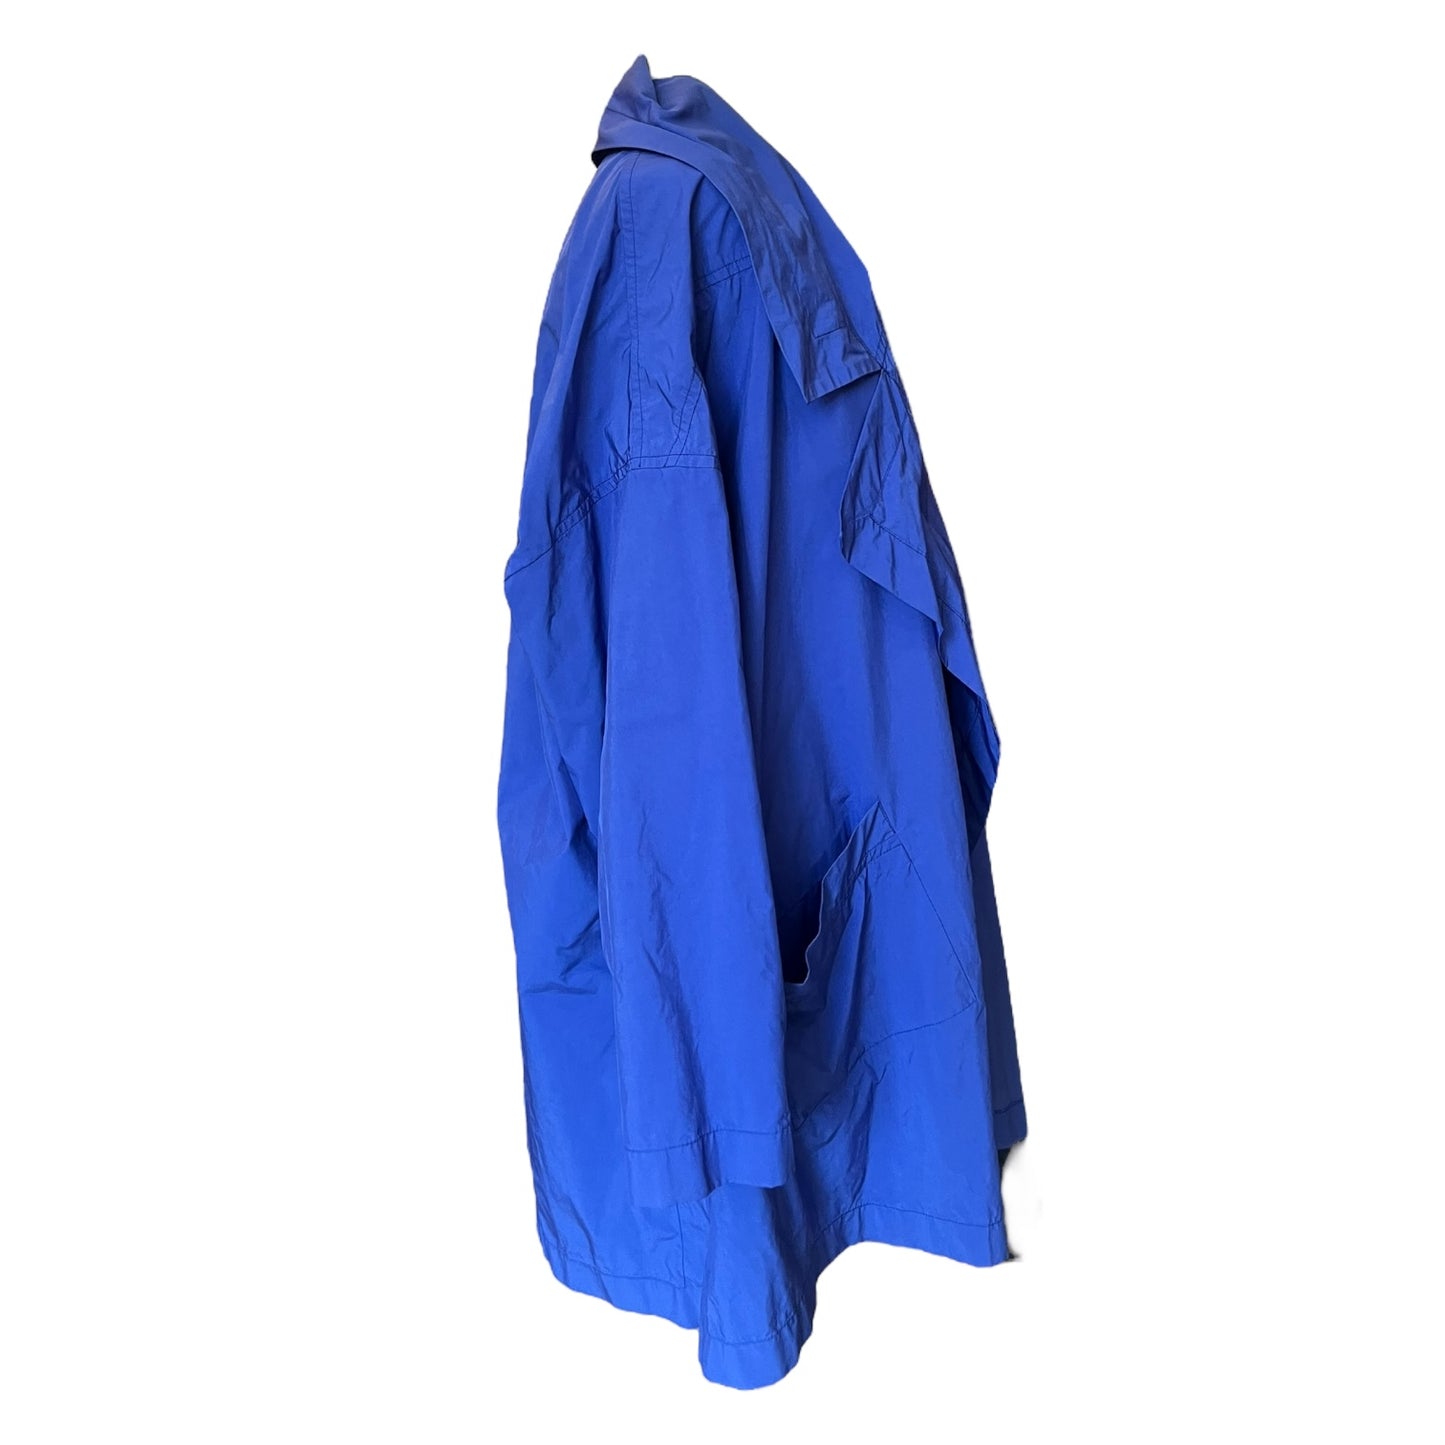 Ischiko Royal Blue Rain Coat